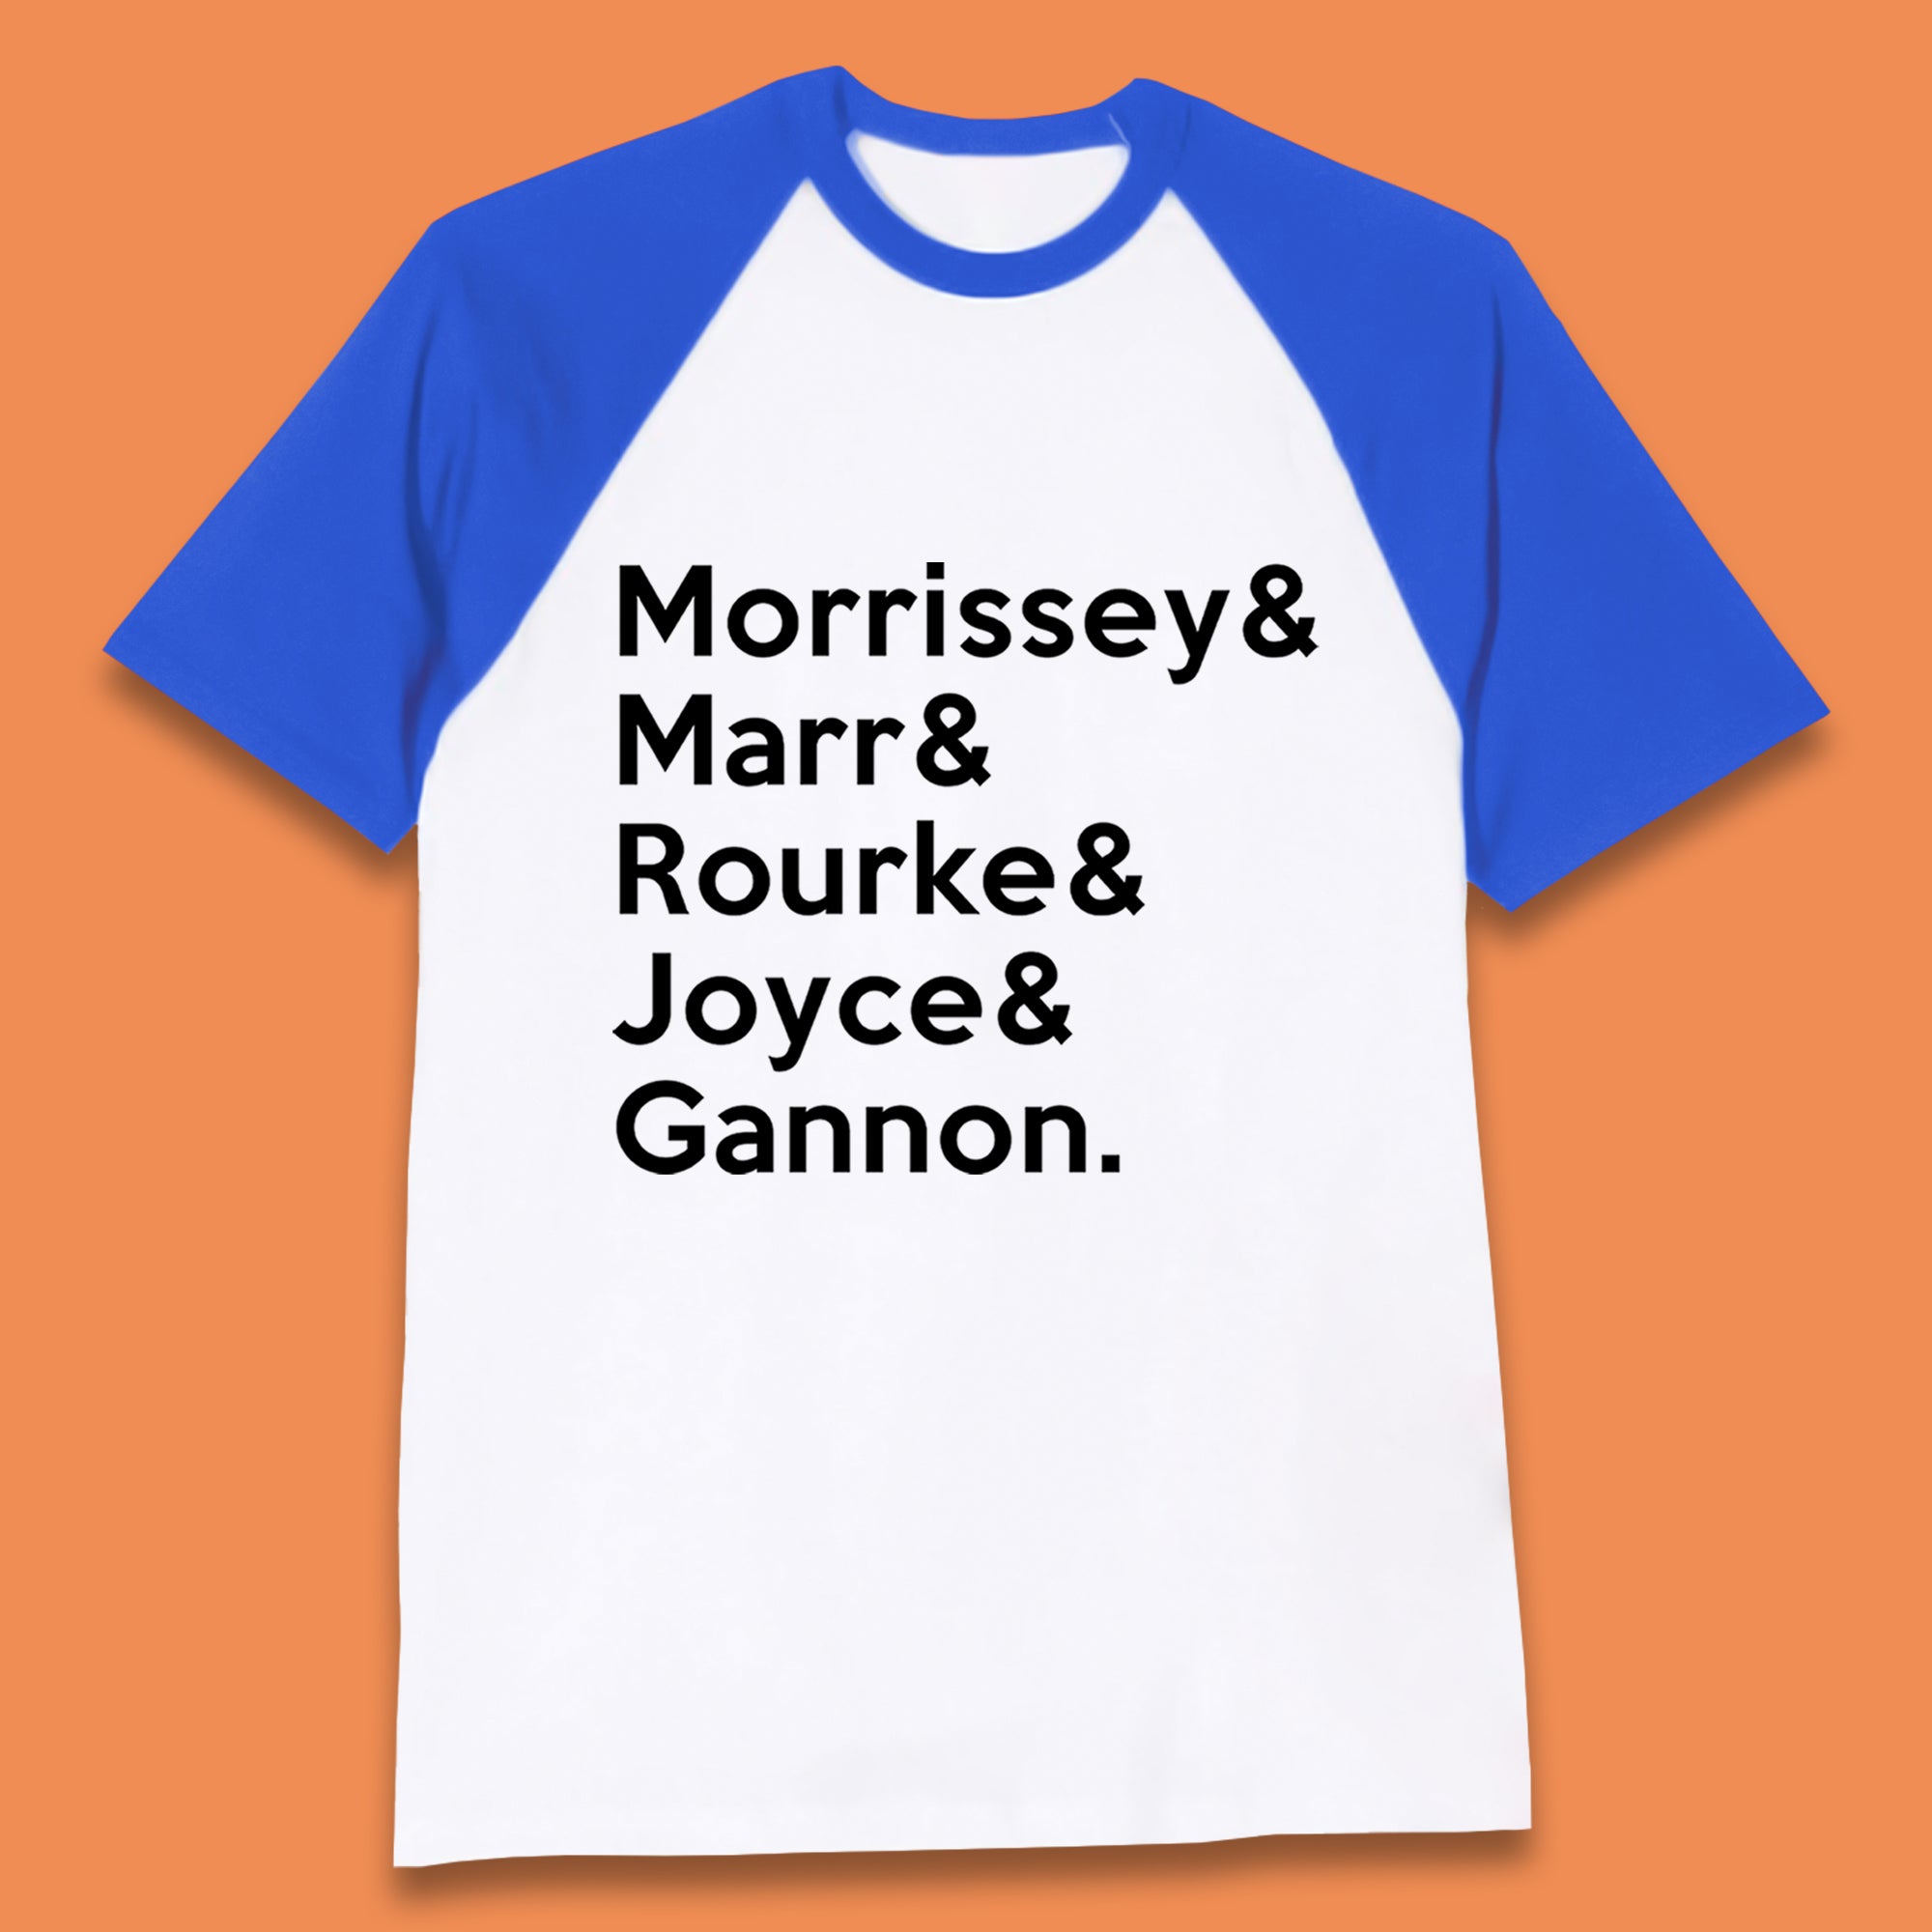 Morrissey &  & Rourke & Joyce & Gannon The Smiths Band Baseball T-Shirt